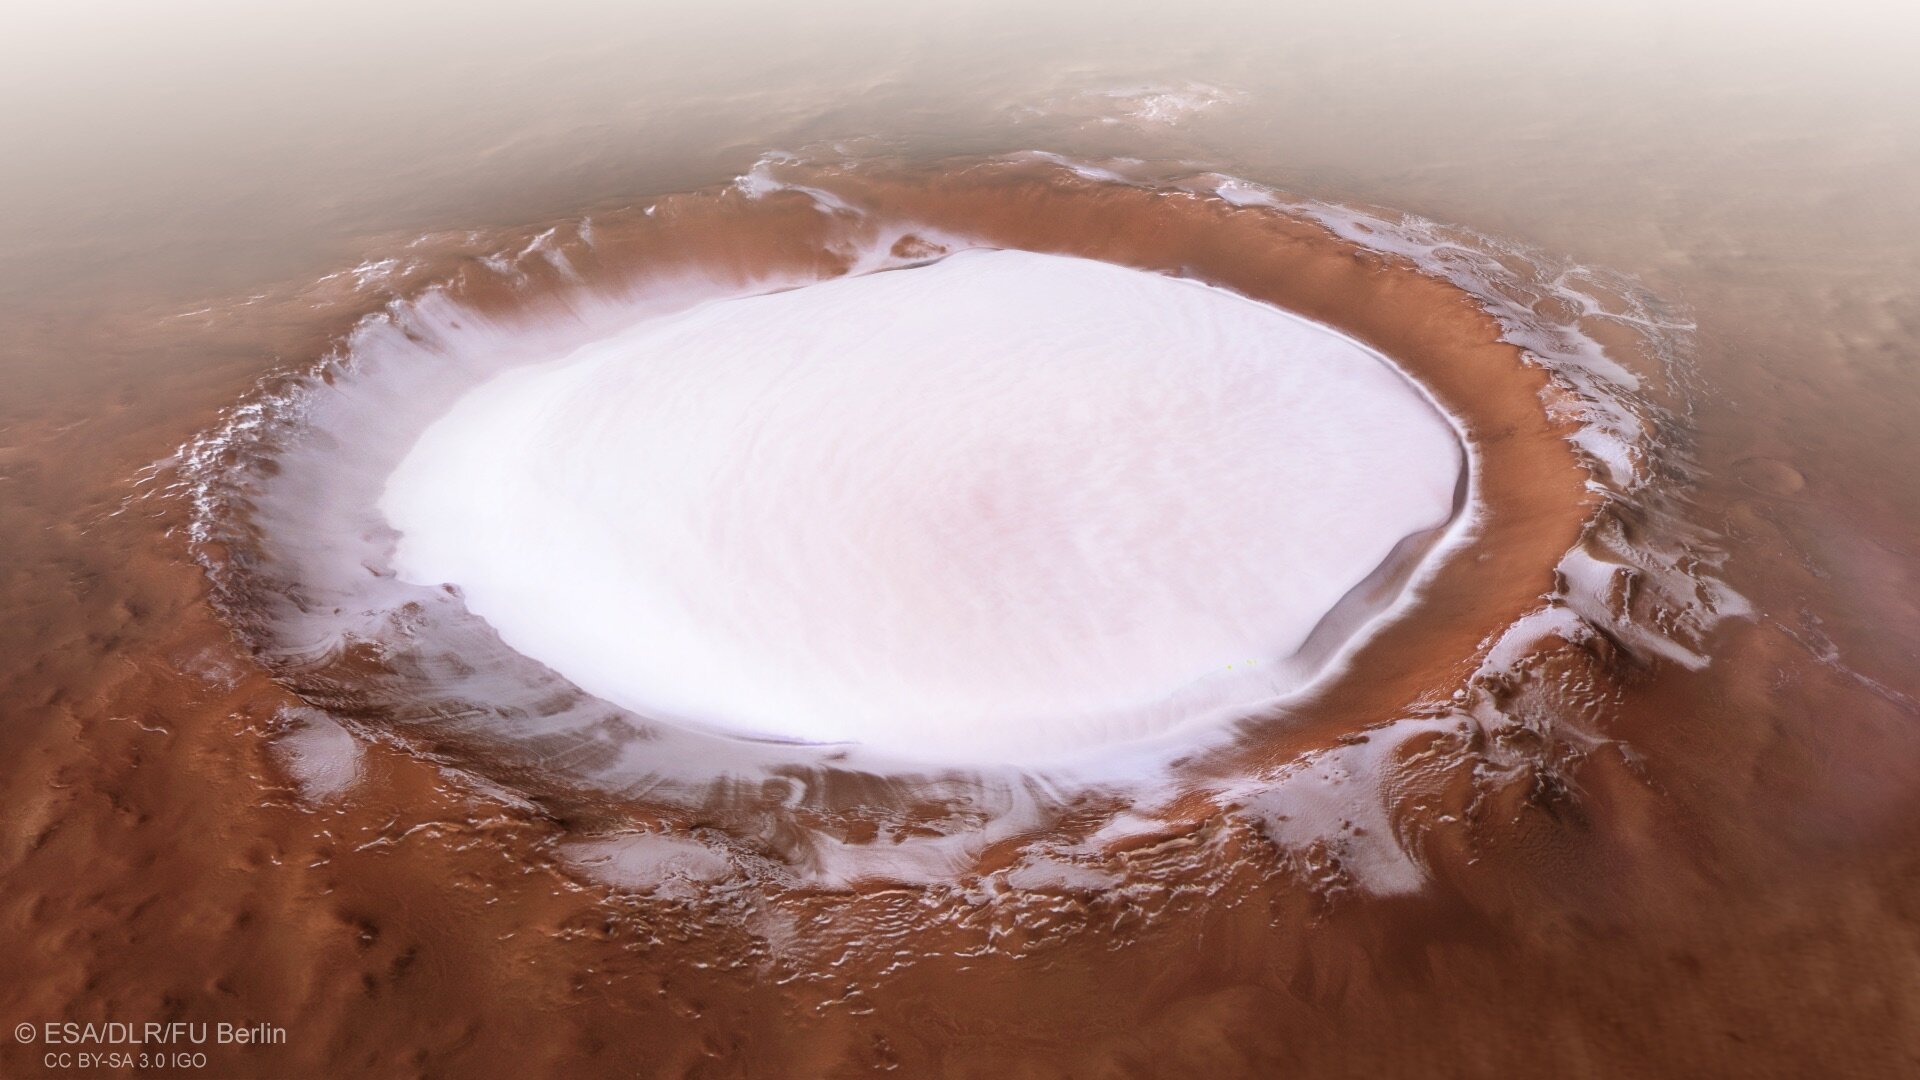 Vista en perspectiva del cráter Korolev